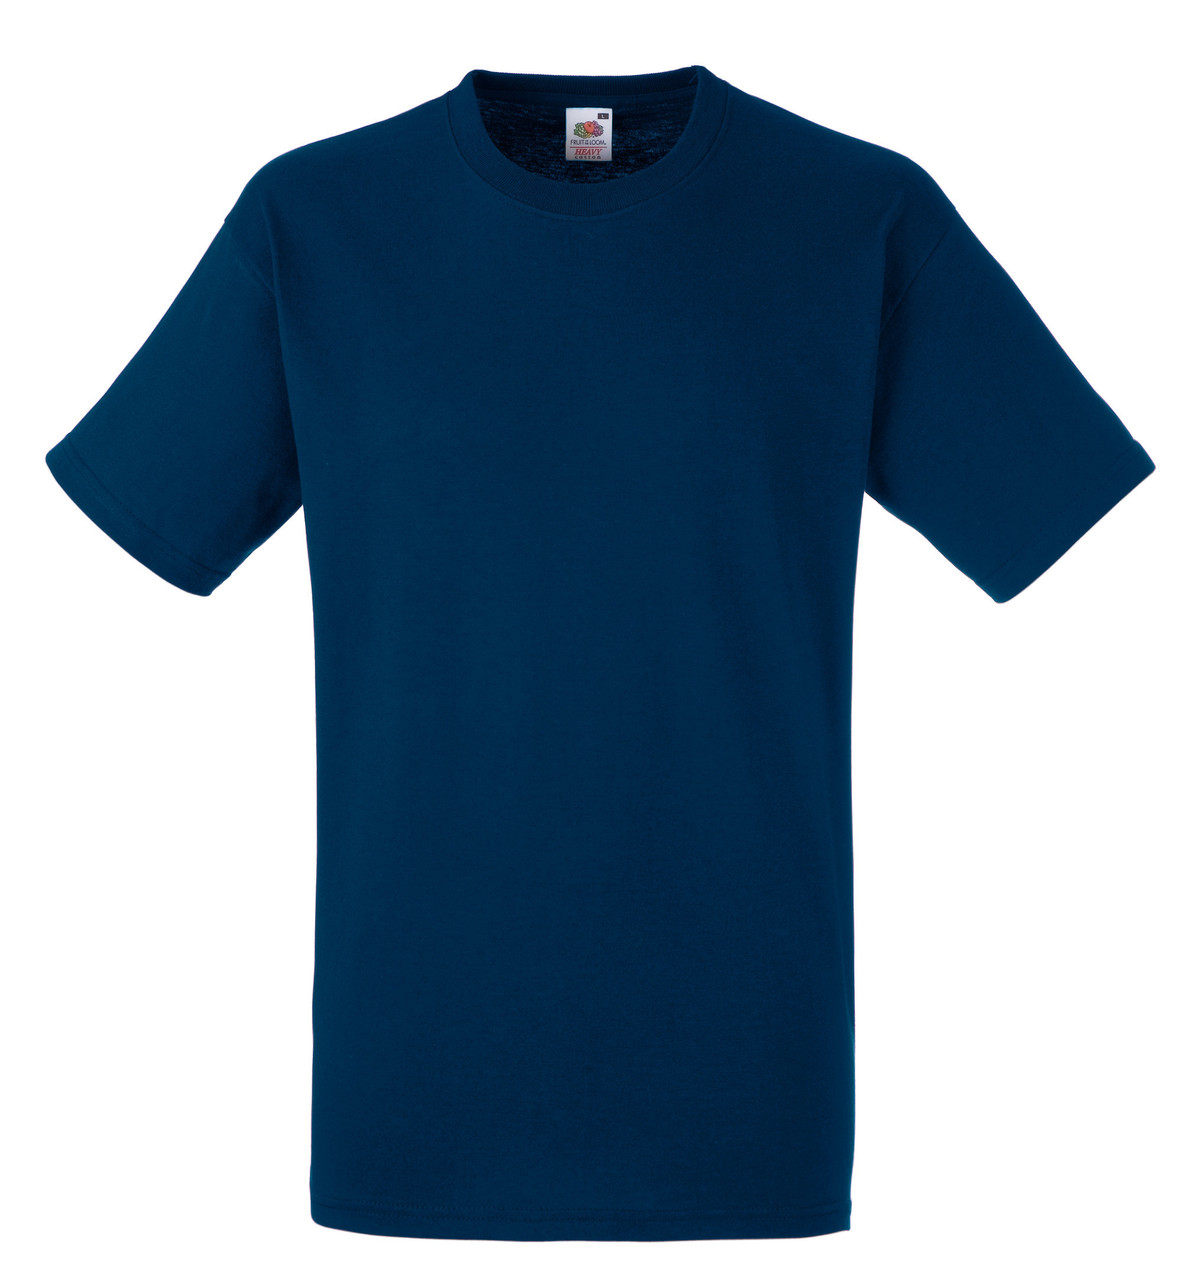 Чоловіча футболка Щільна Fruit of the loom Темно-синій 61-212-32 М